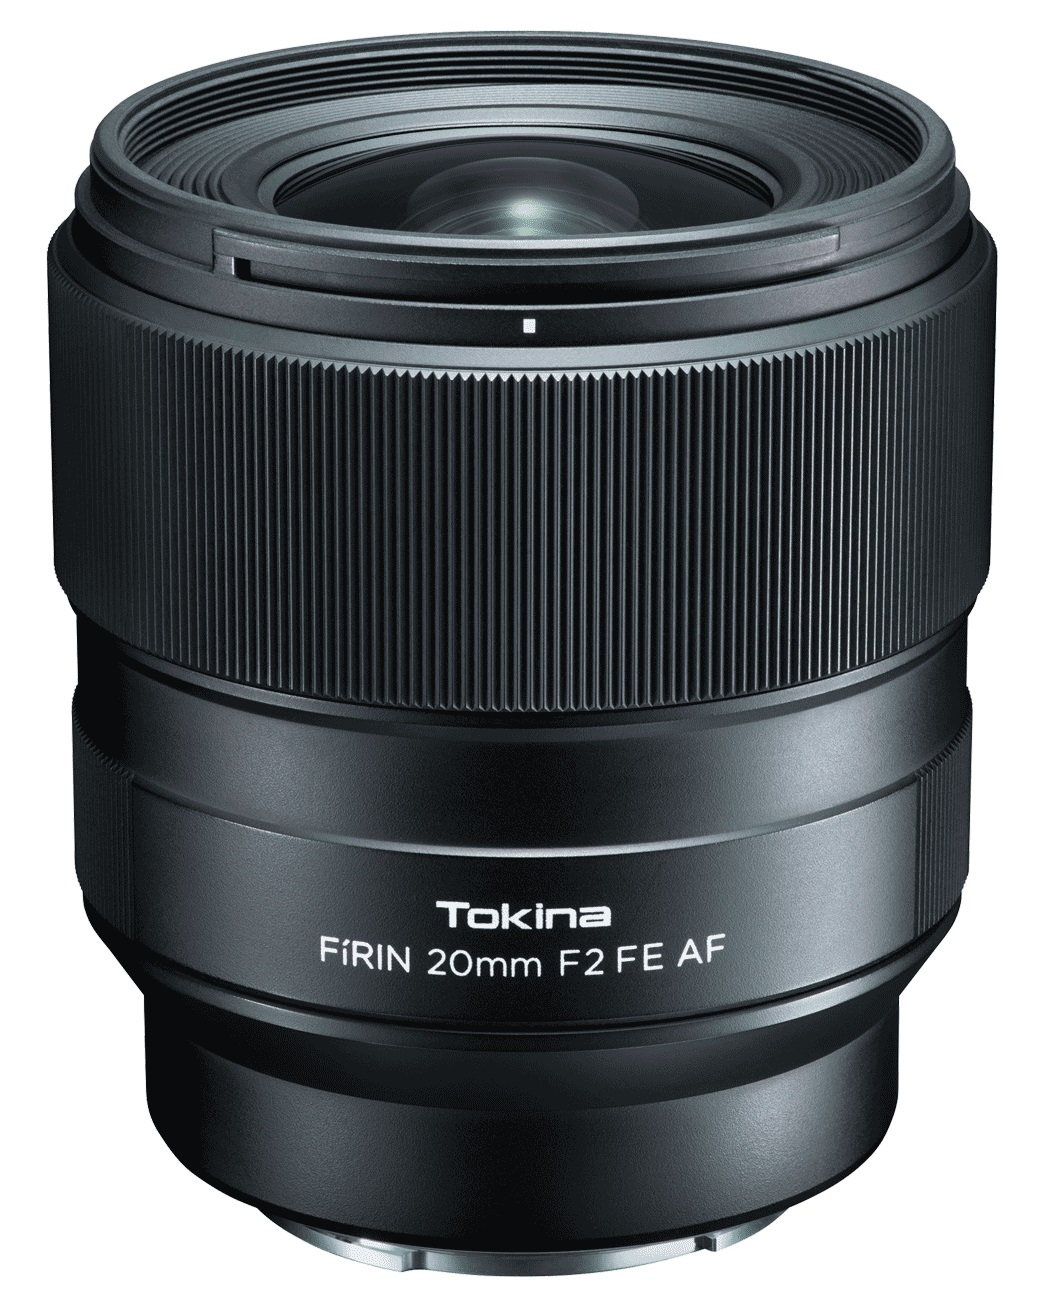 объектив tokina atx m 33mm f 1 4 e mount protector magnet filter ta 008 52mm Объектив Tokina FIRIN 20mm F2 FE AF для Sony автофокус